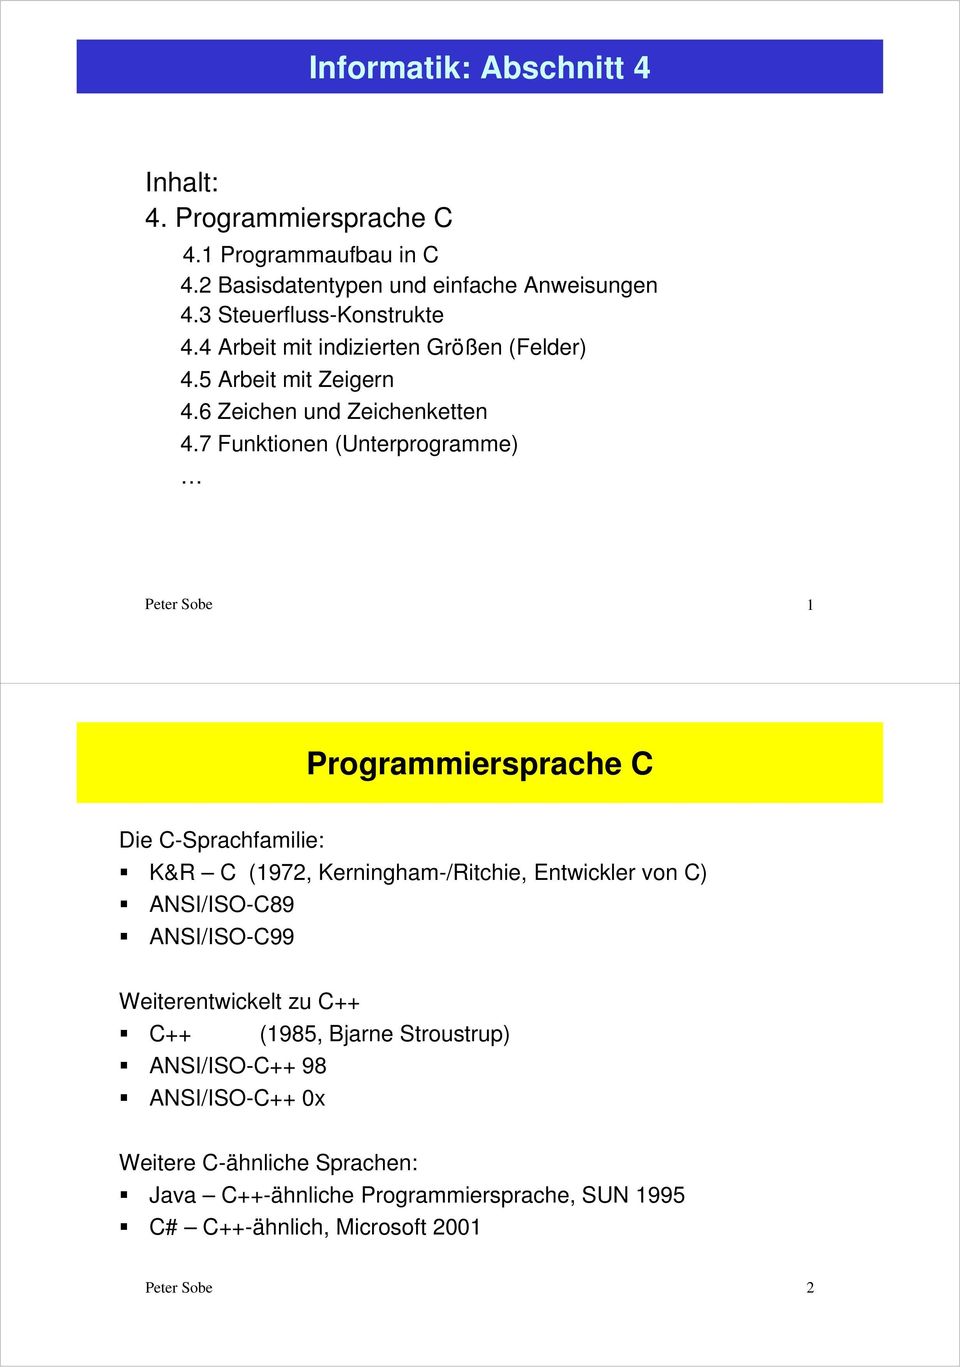 7 Funktionen (Unterprogramme) Peter Sobe 1 Programmiersprache C Die C-Sprachfamilie: K&R C (1972, Kerningham-/Ritchie, Entwickler von C) ANSI/ISO-C89